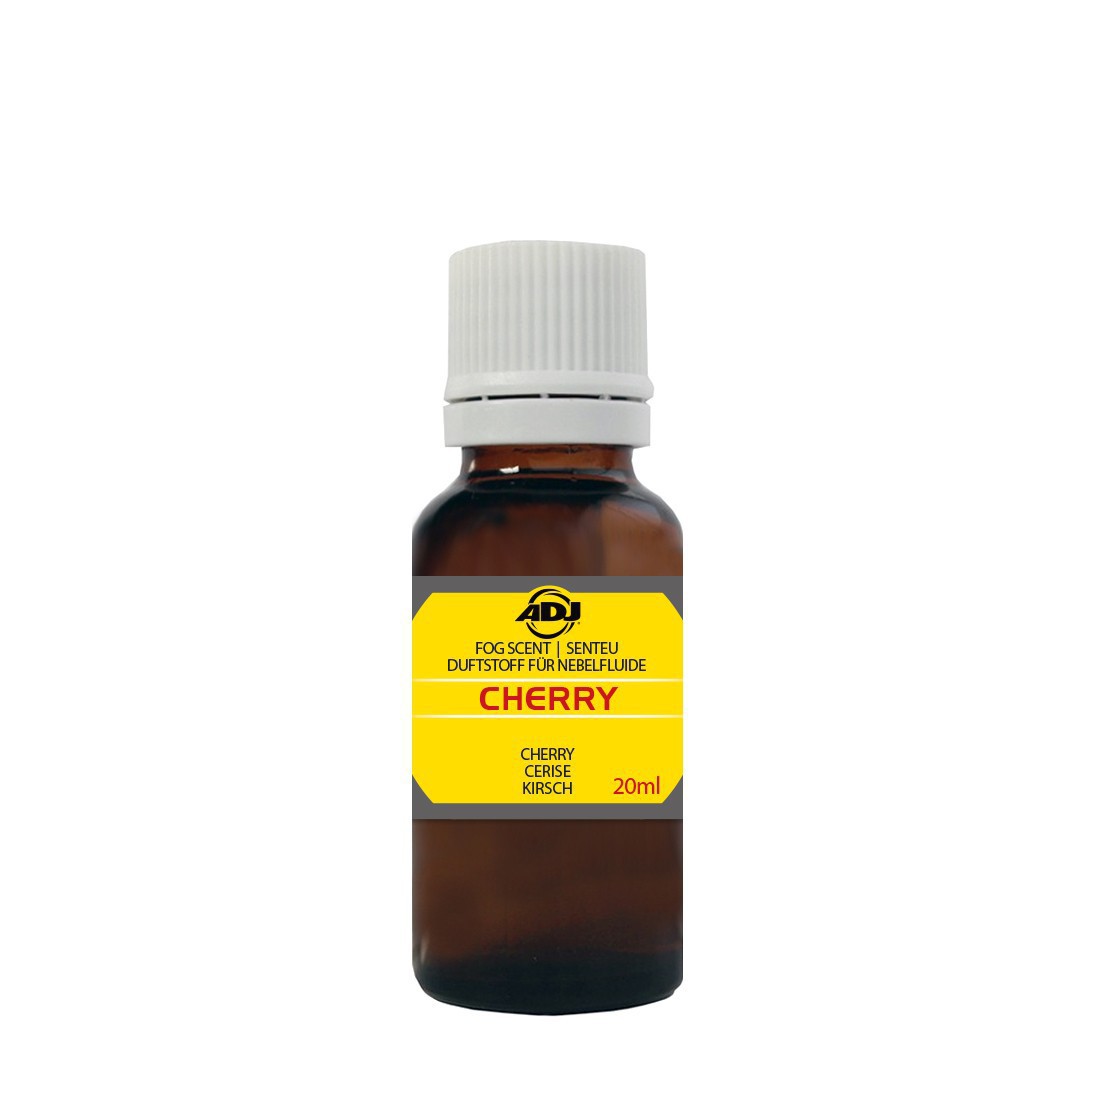 ADJ fog scent cherry 20ml - Zapach do dymu